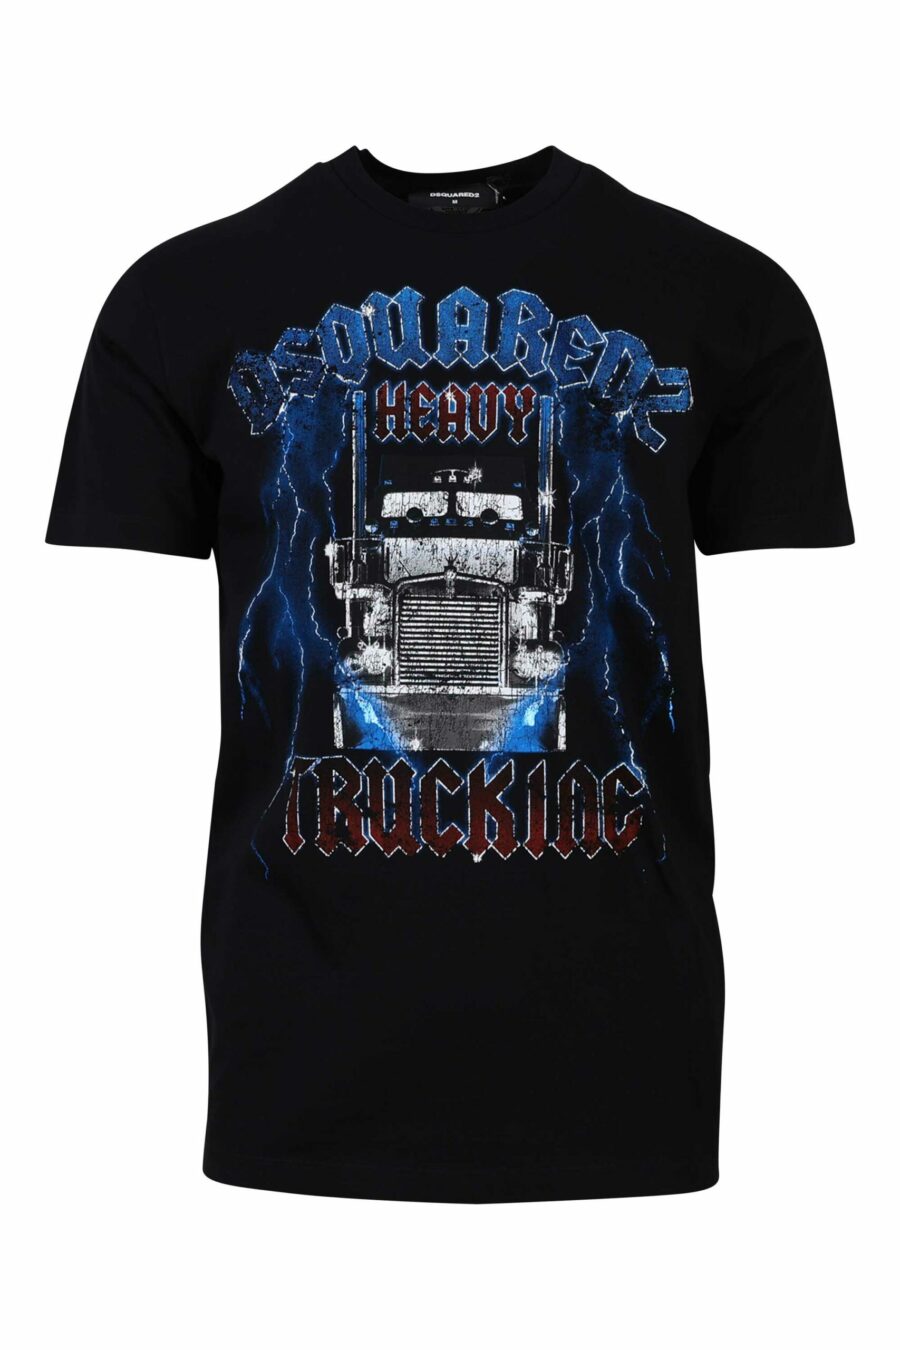 Camiseta negra con maxilogo gotico azul y rojo - 8054148085940 1 scaled